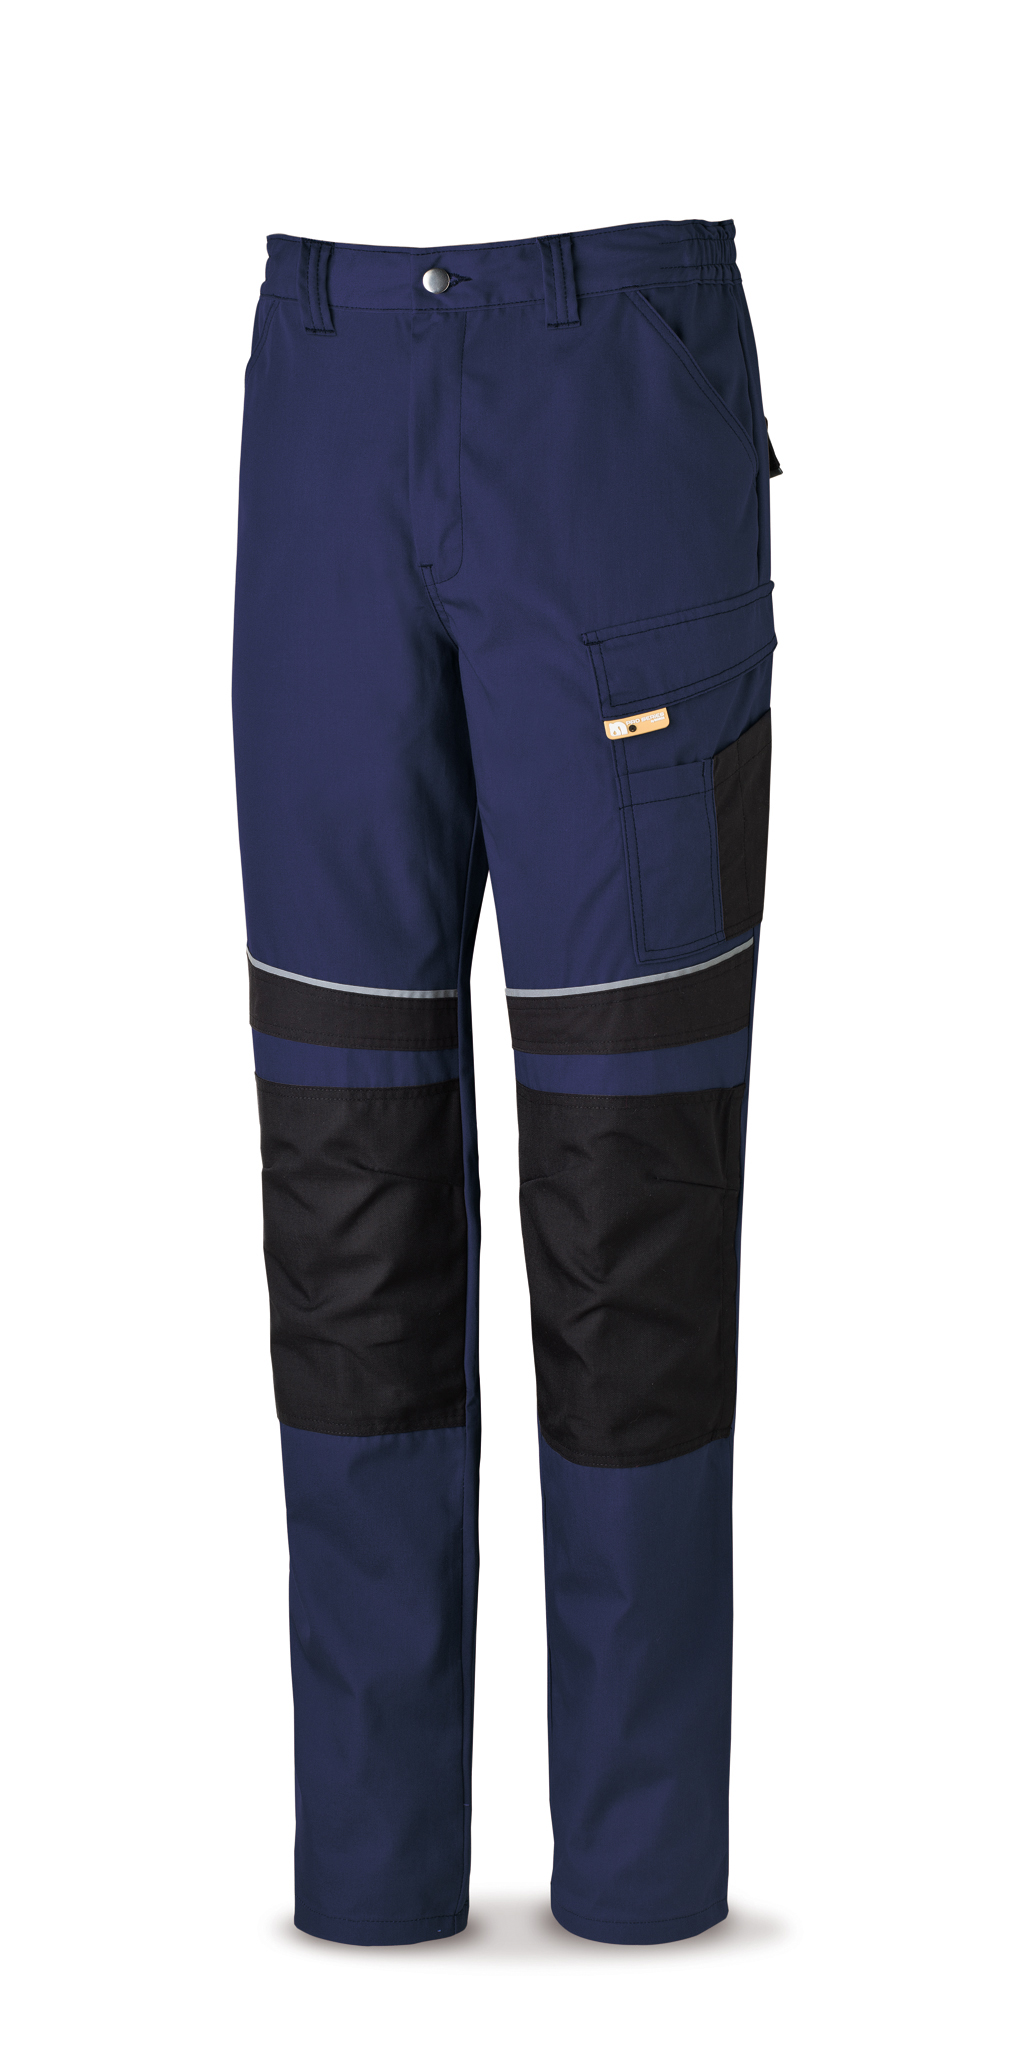 588-PANE Vetements de travail laboral Pro Series Pantalon toile tergal 245 g. Coloris bleu marine/noir